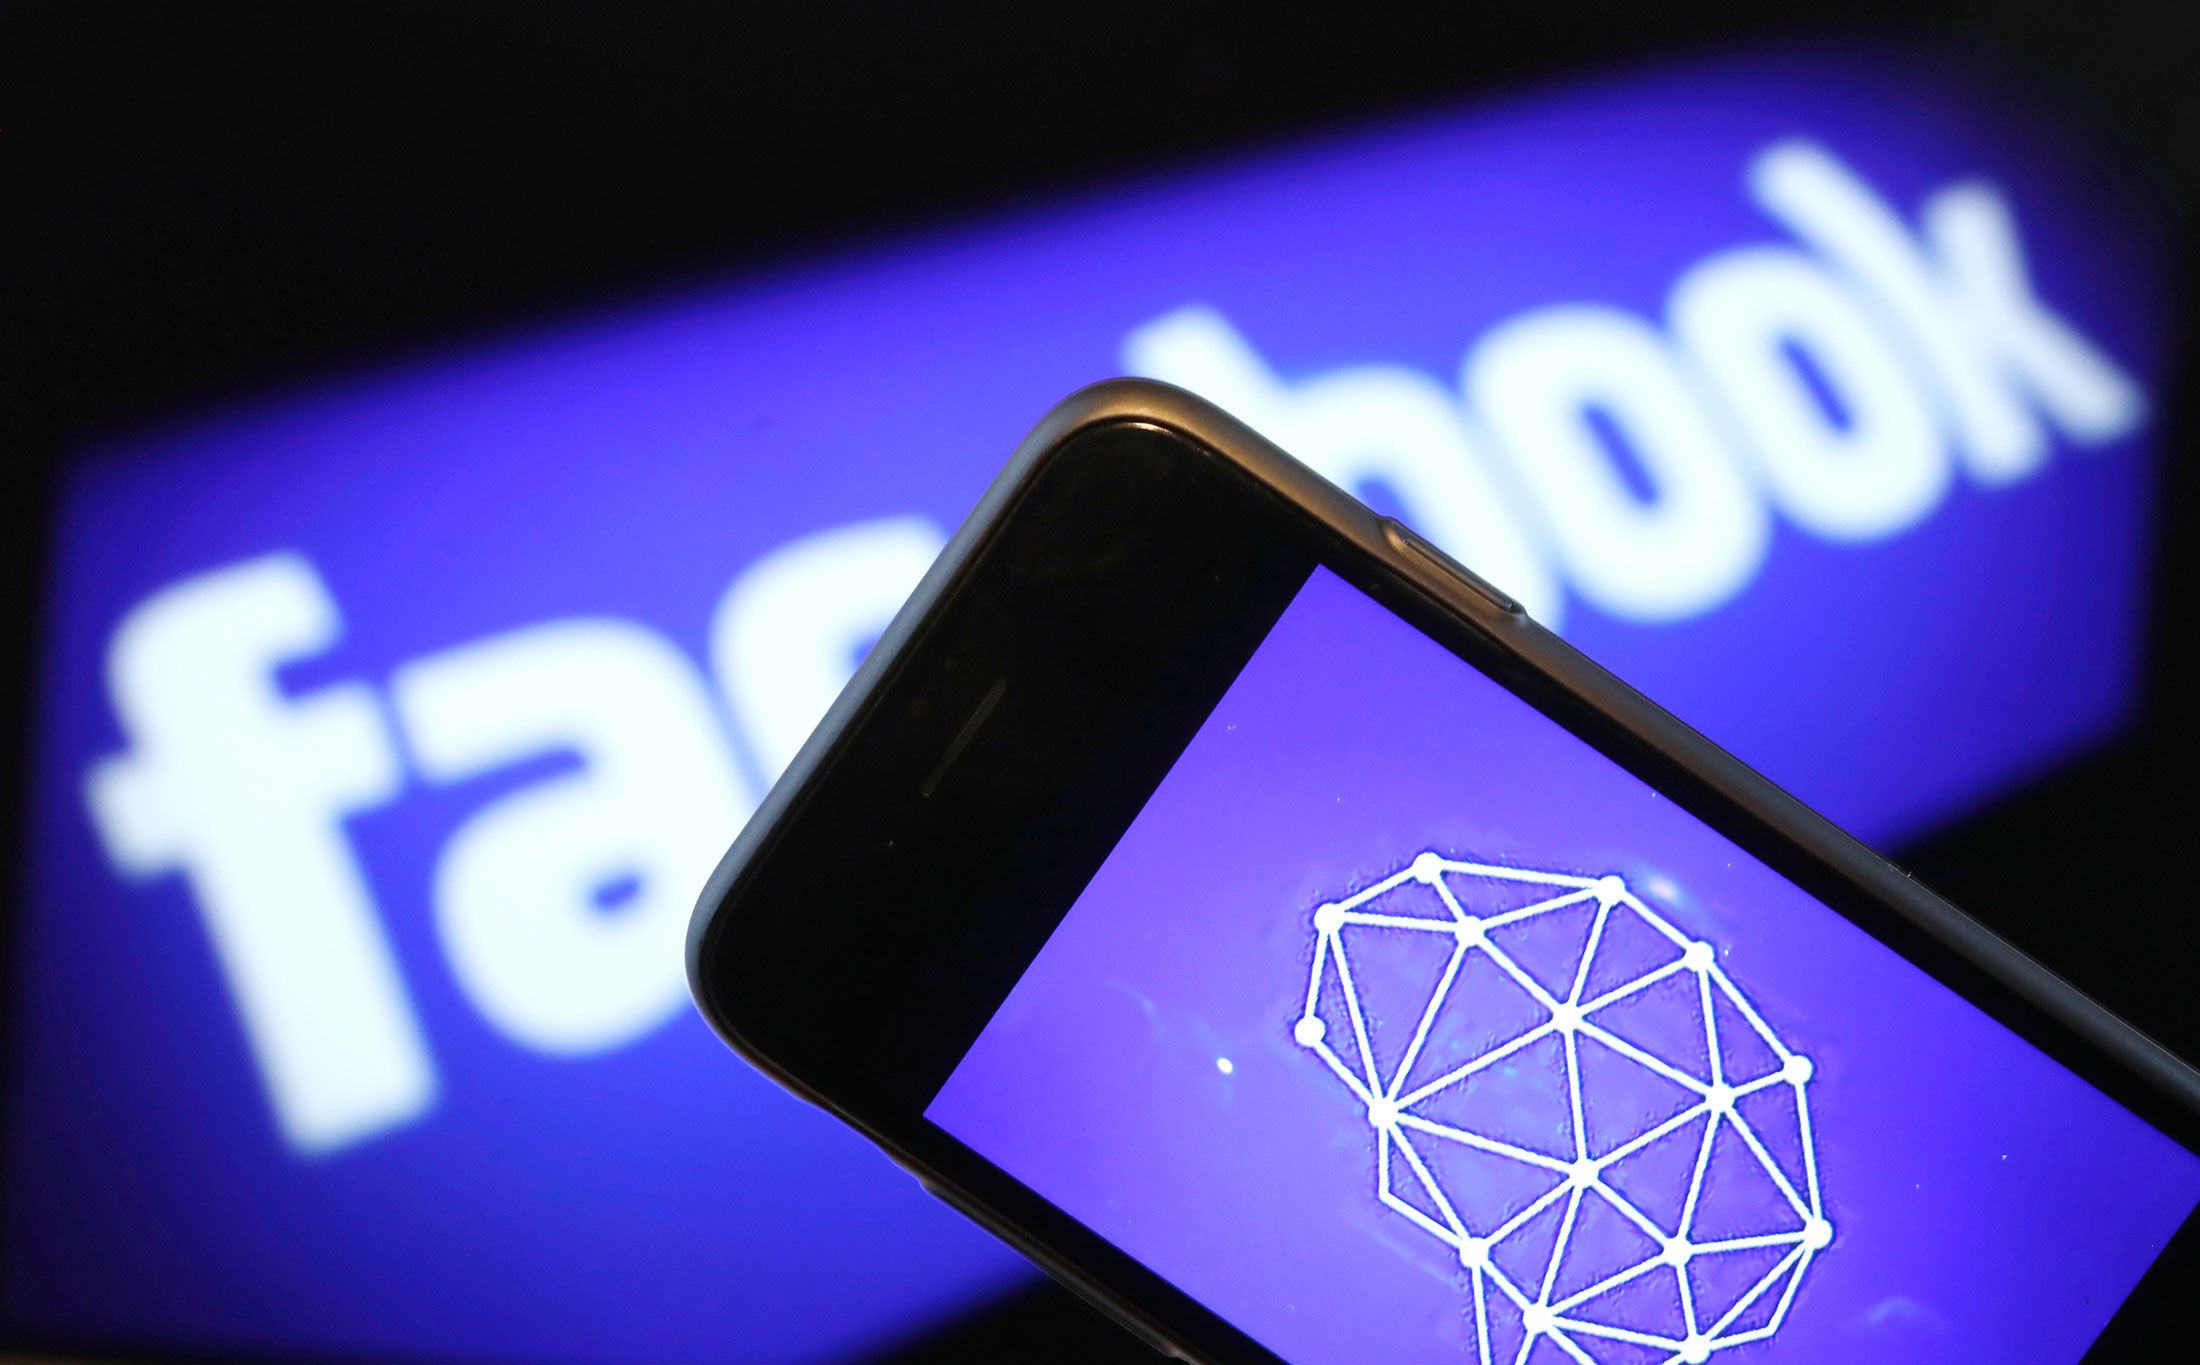 สหราชอาณาจักรเตรียมปรับ Facebook เป็นจำนวนกว่า 20 ล้านบาทจากกรณี Cambridge Analytica